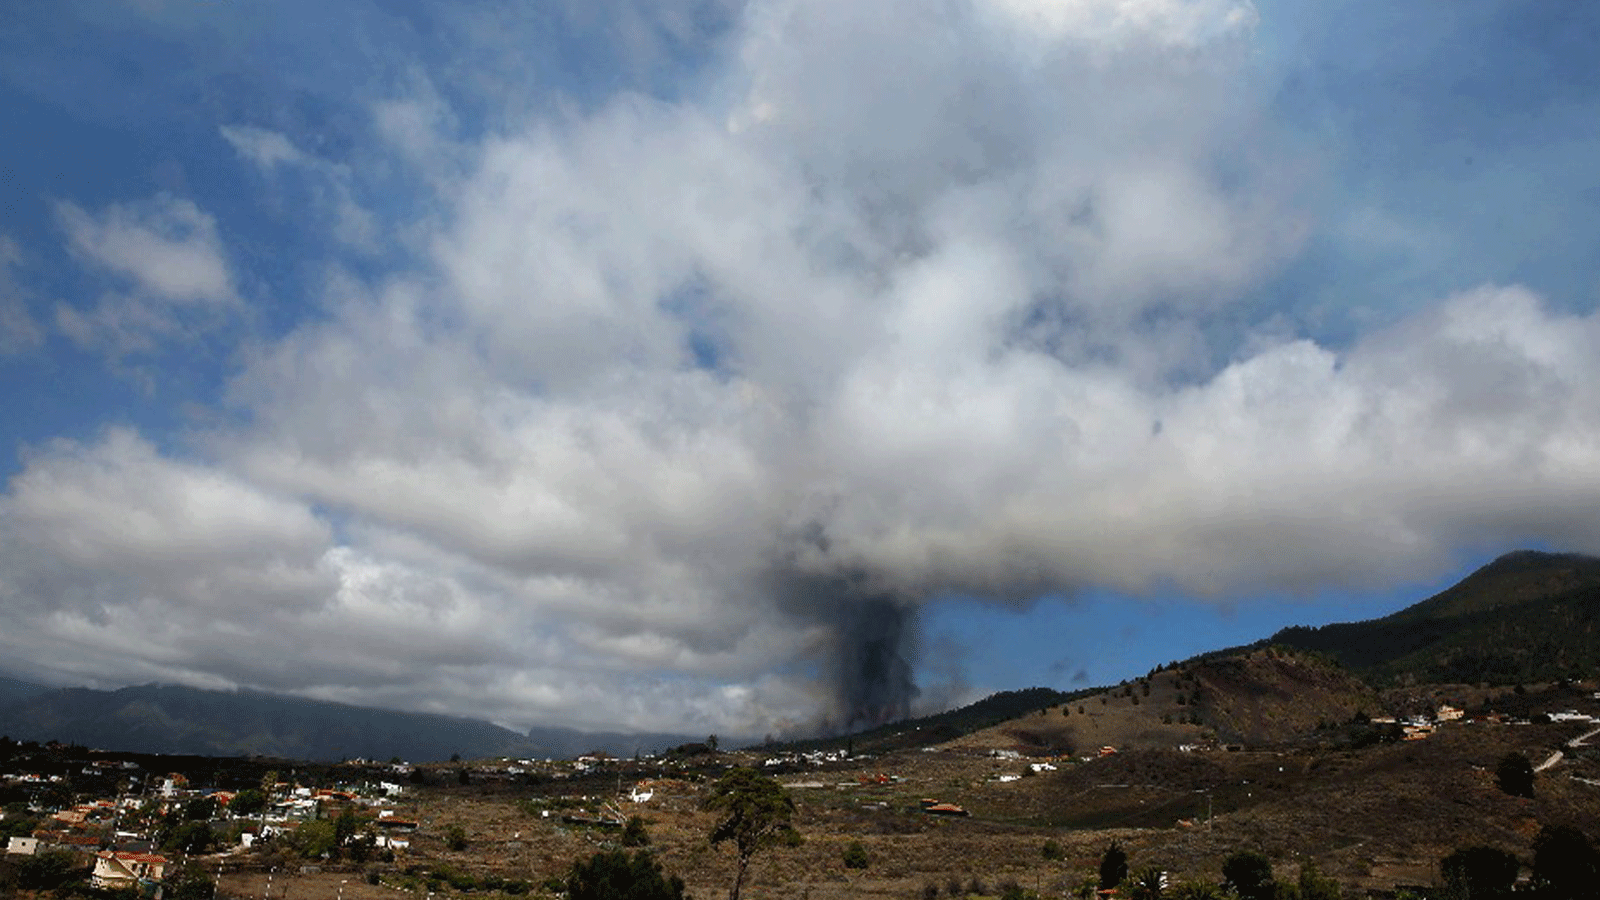 بركان كومبر فيجا في لا بالما بجزر الكناري الإسبانية ثار يوم الأحد 19 أيلول/ سبتمبر 2021 بعد أيامٍ من النشاط الزلزالي المتزايد